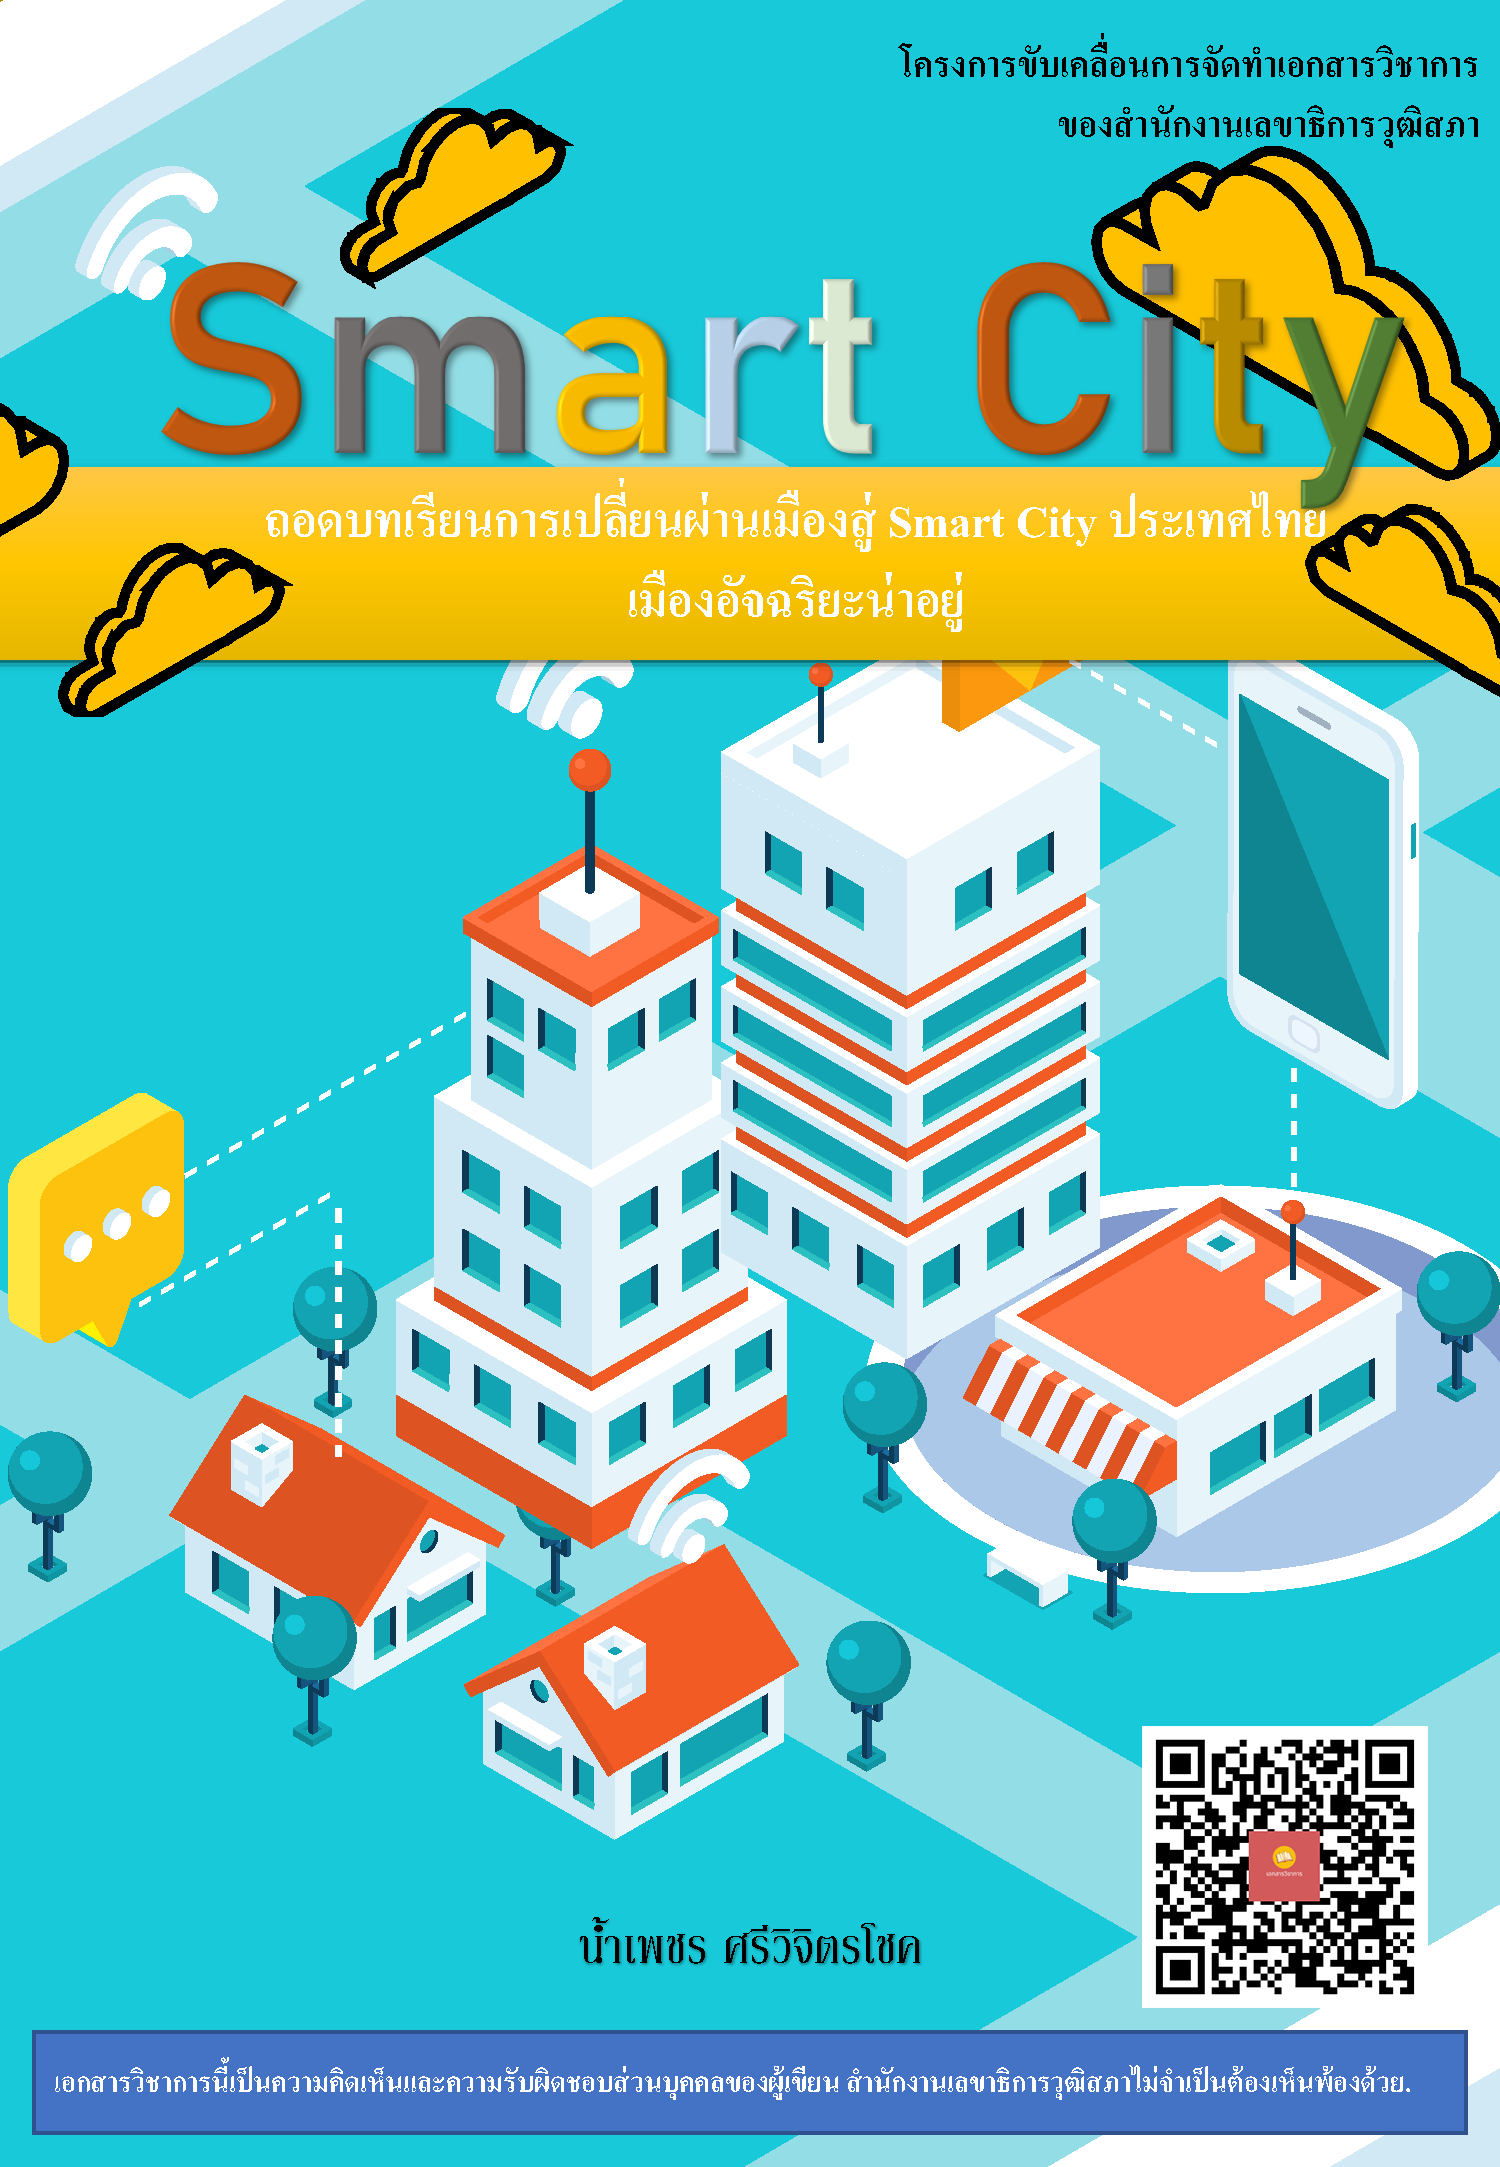 บทความทางวิชาการ เรื่อง "SMART CITY : เมืองน่าอยู่อัจฉริยะถอดบทเรียนการเปลี่ยนผ่านเมืองสู่ Smart City ประเทศไทย"